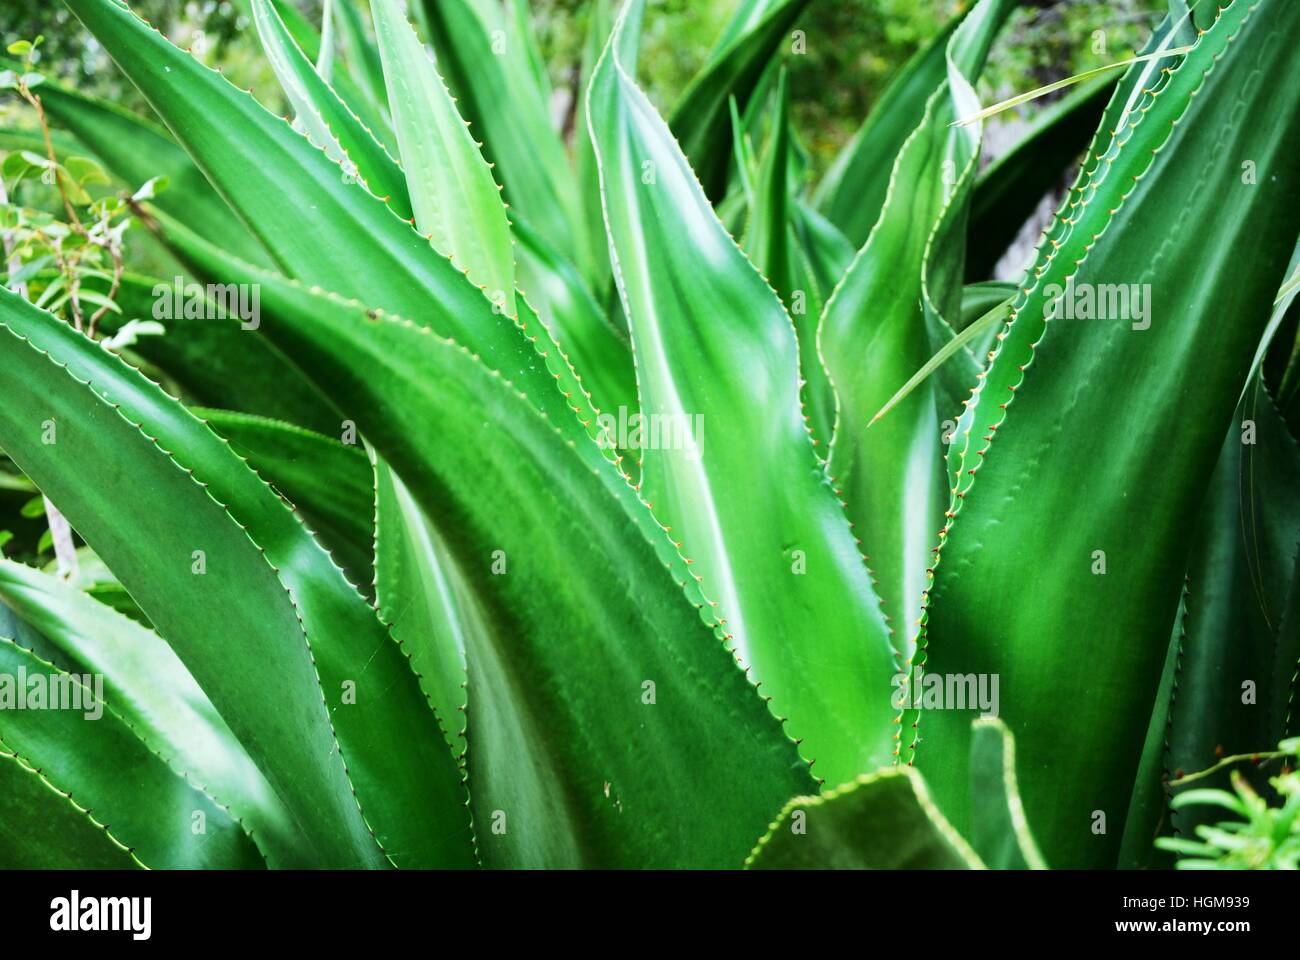 Shiny leaves of Tropical Aloe Vera plant Stock Photo